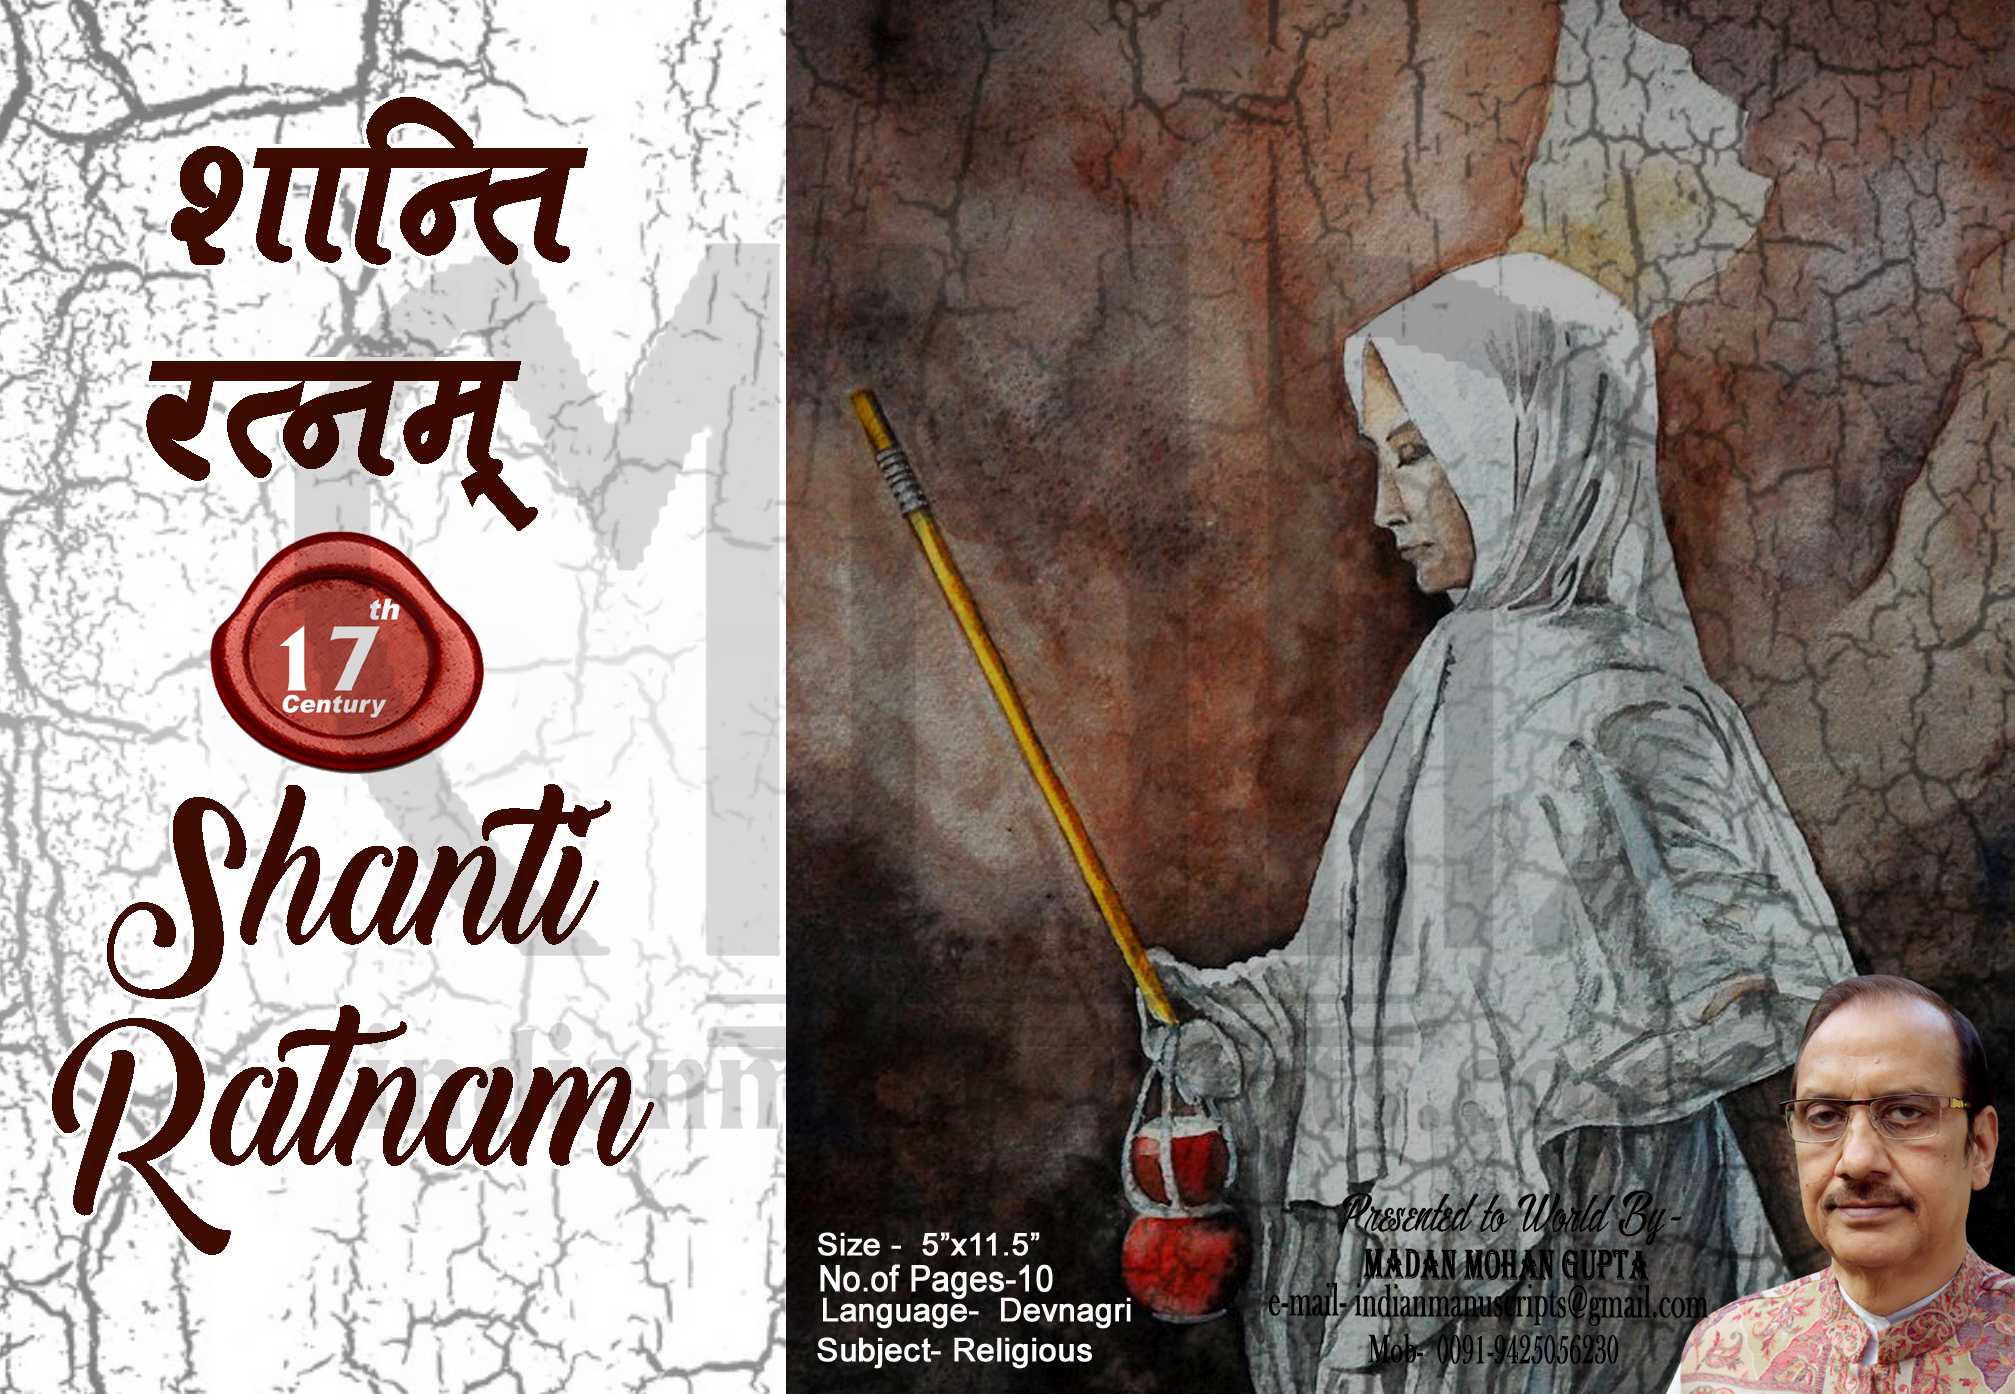 Shanti Ratnam